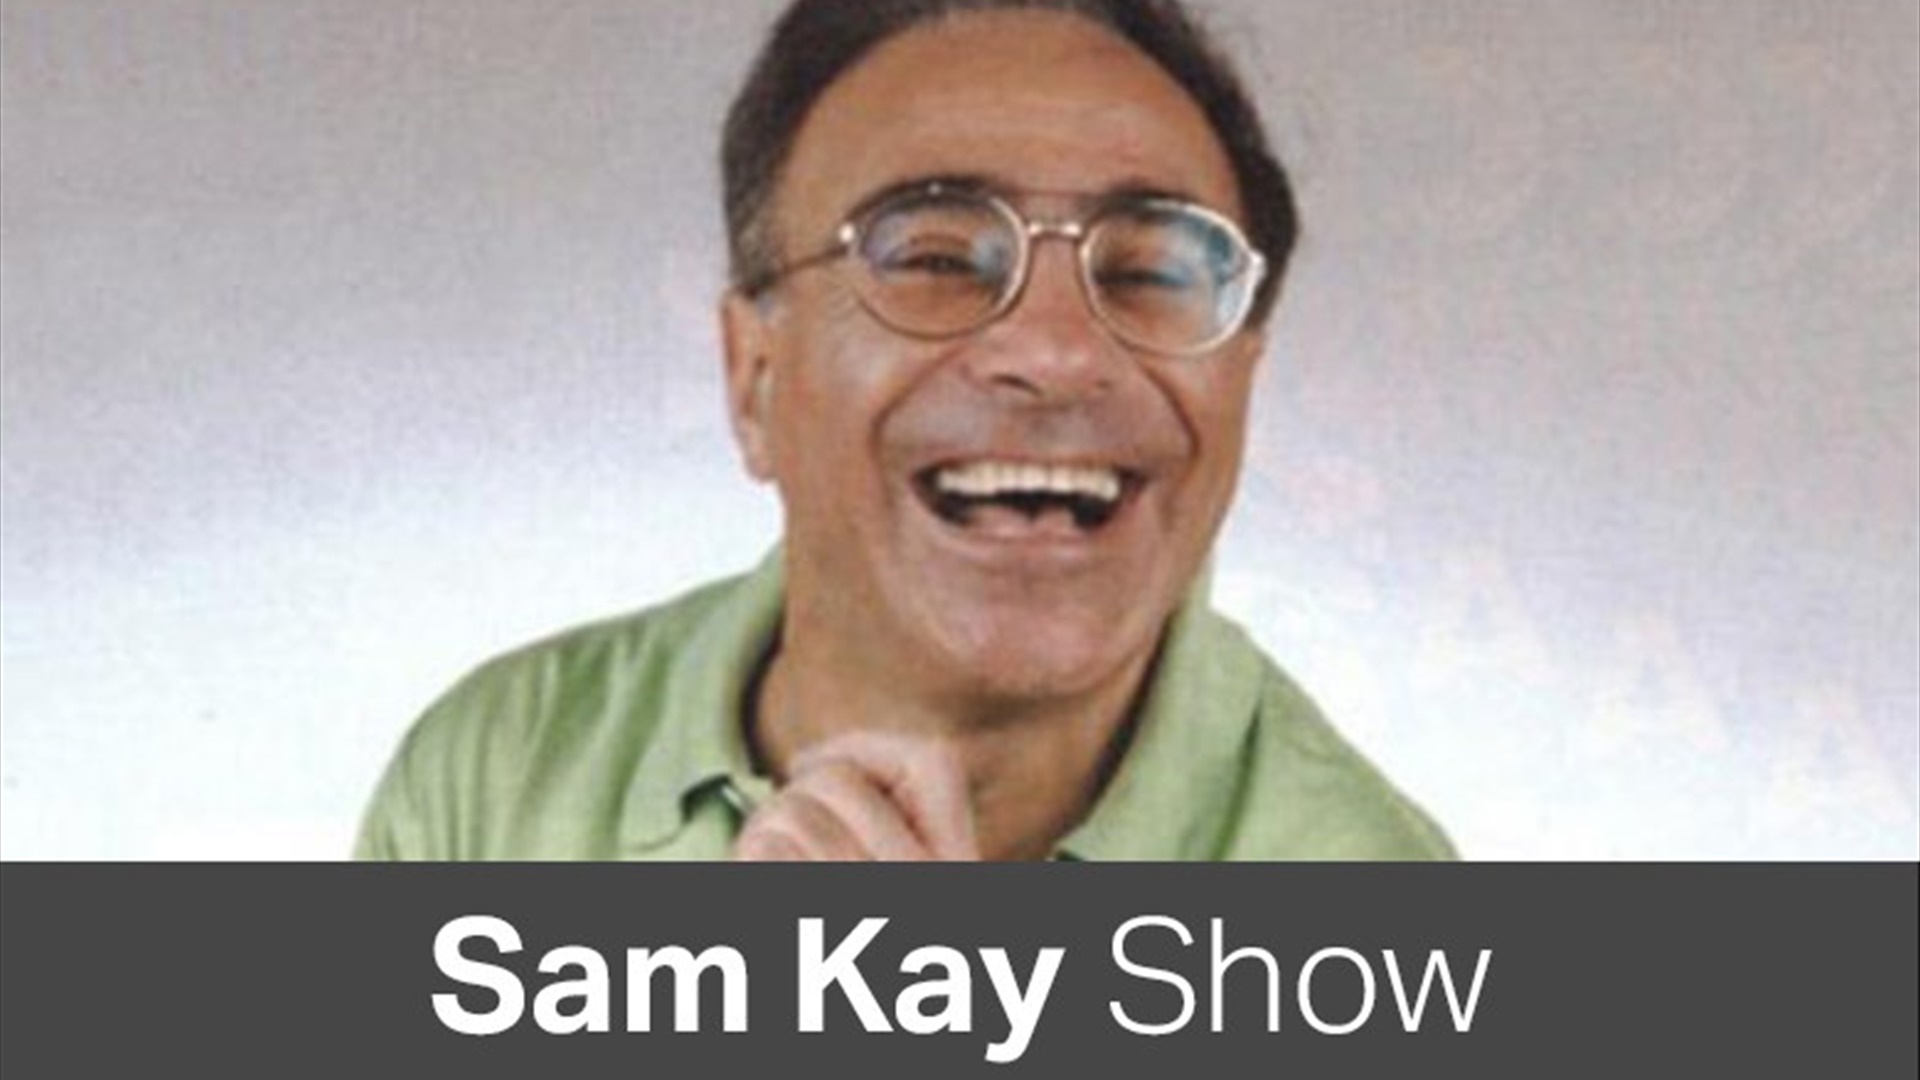 Sam Kay Show